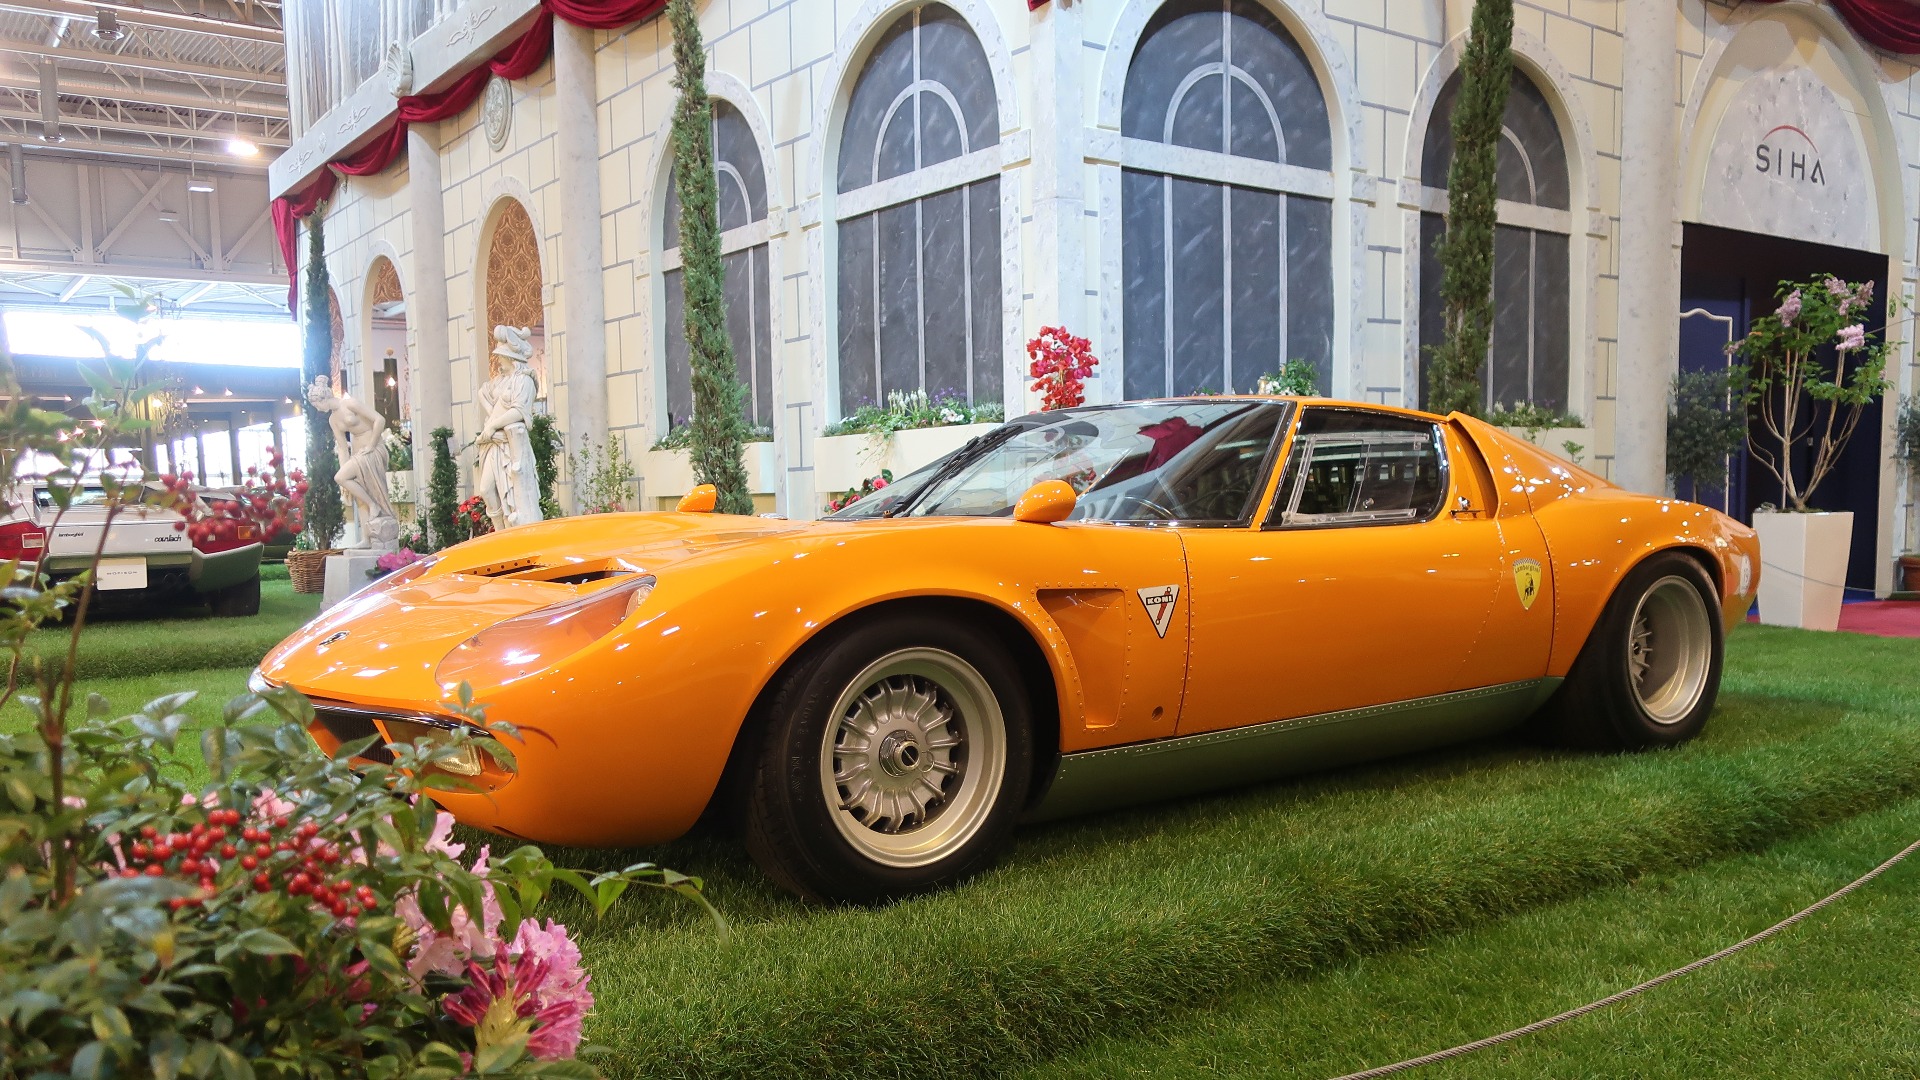 Arrangørene hadde laget en egen Lamborghini-stand for å feire merkets 60-års jubileum, hvor blant annet denne fantastiske Miura Jota tribute-bilen stod.